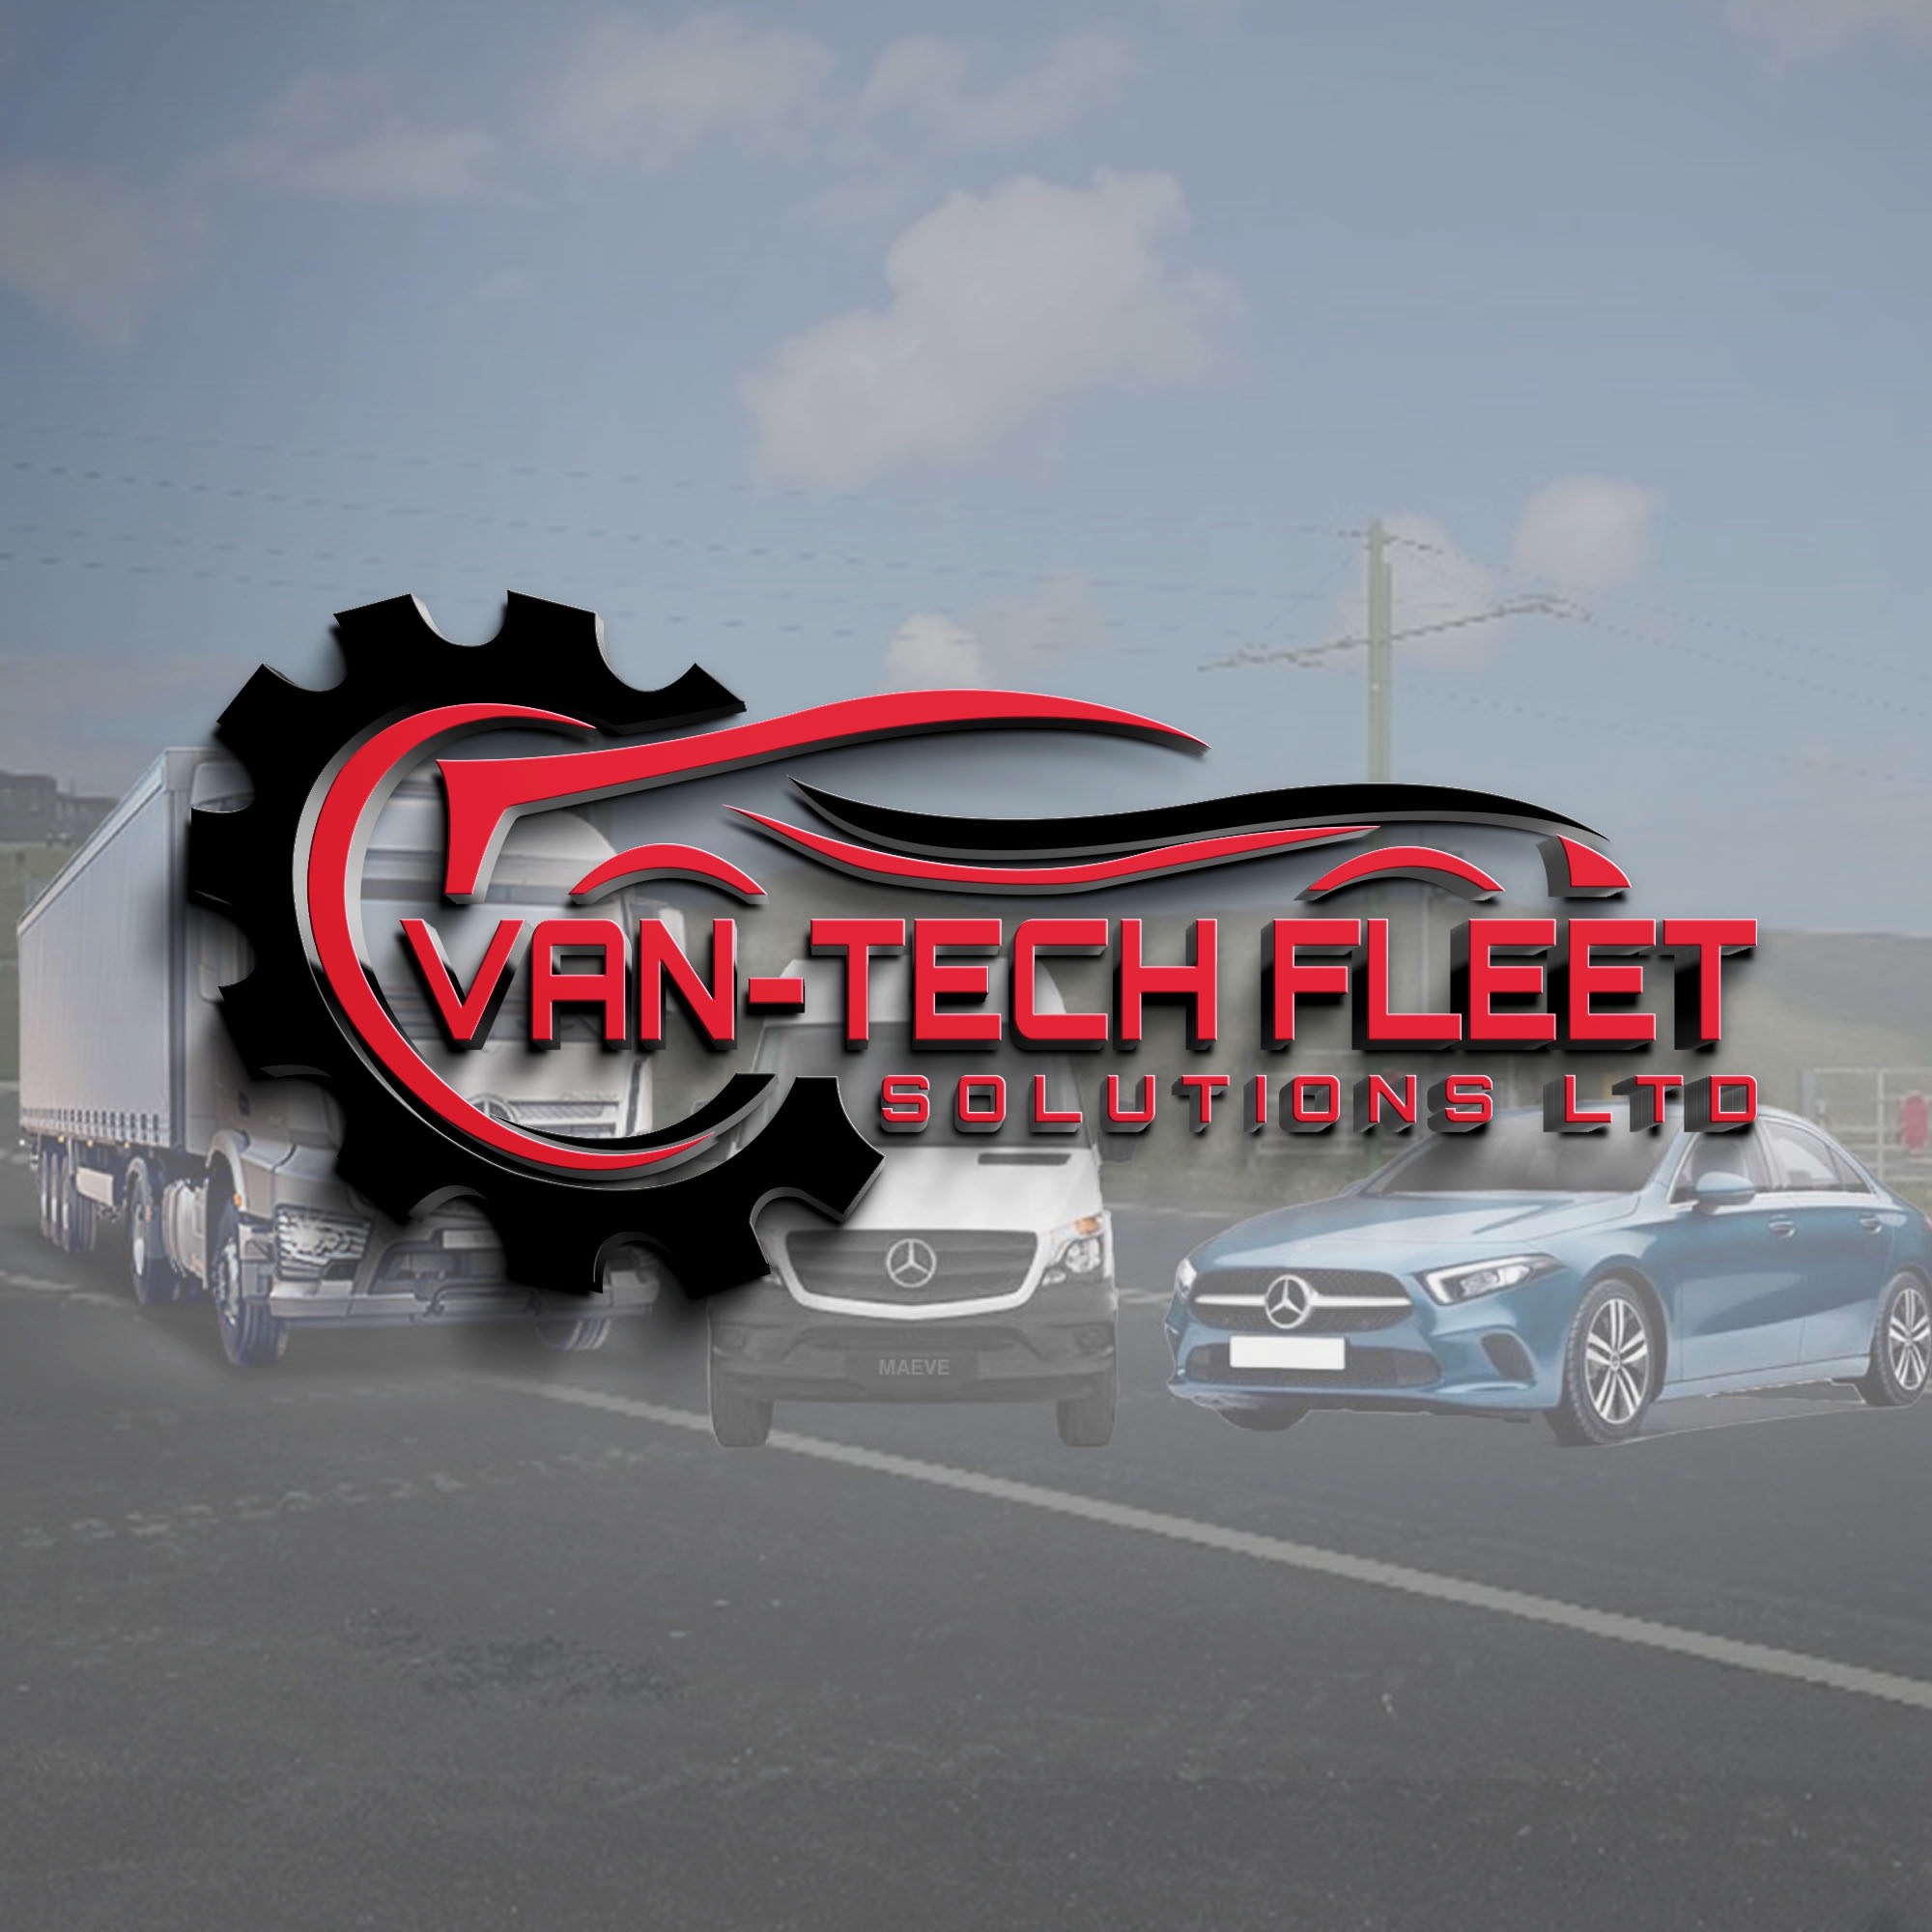 Images Van-Tech Fleet Solutions Ltd